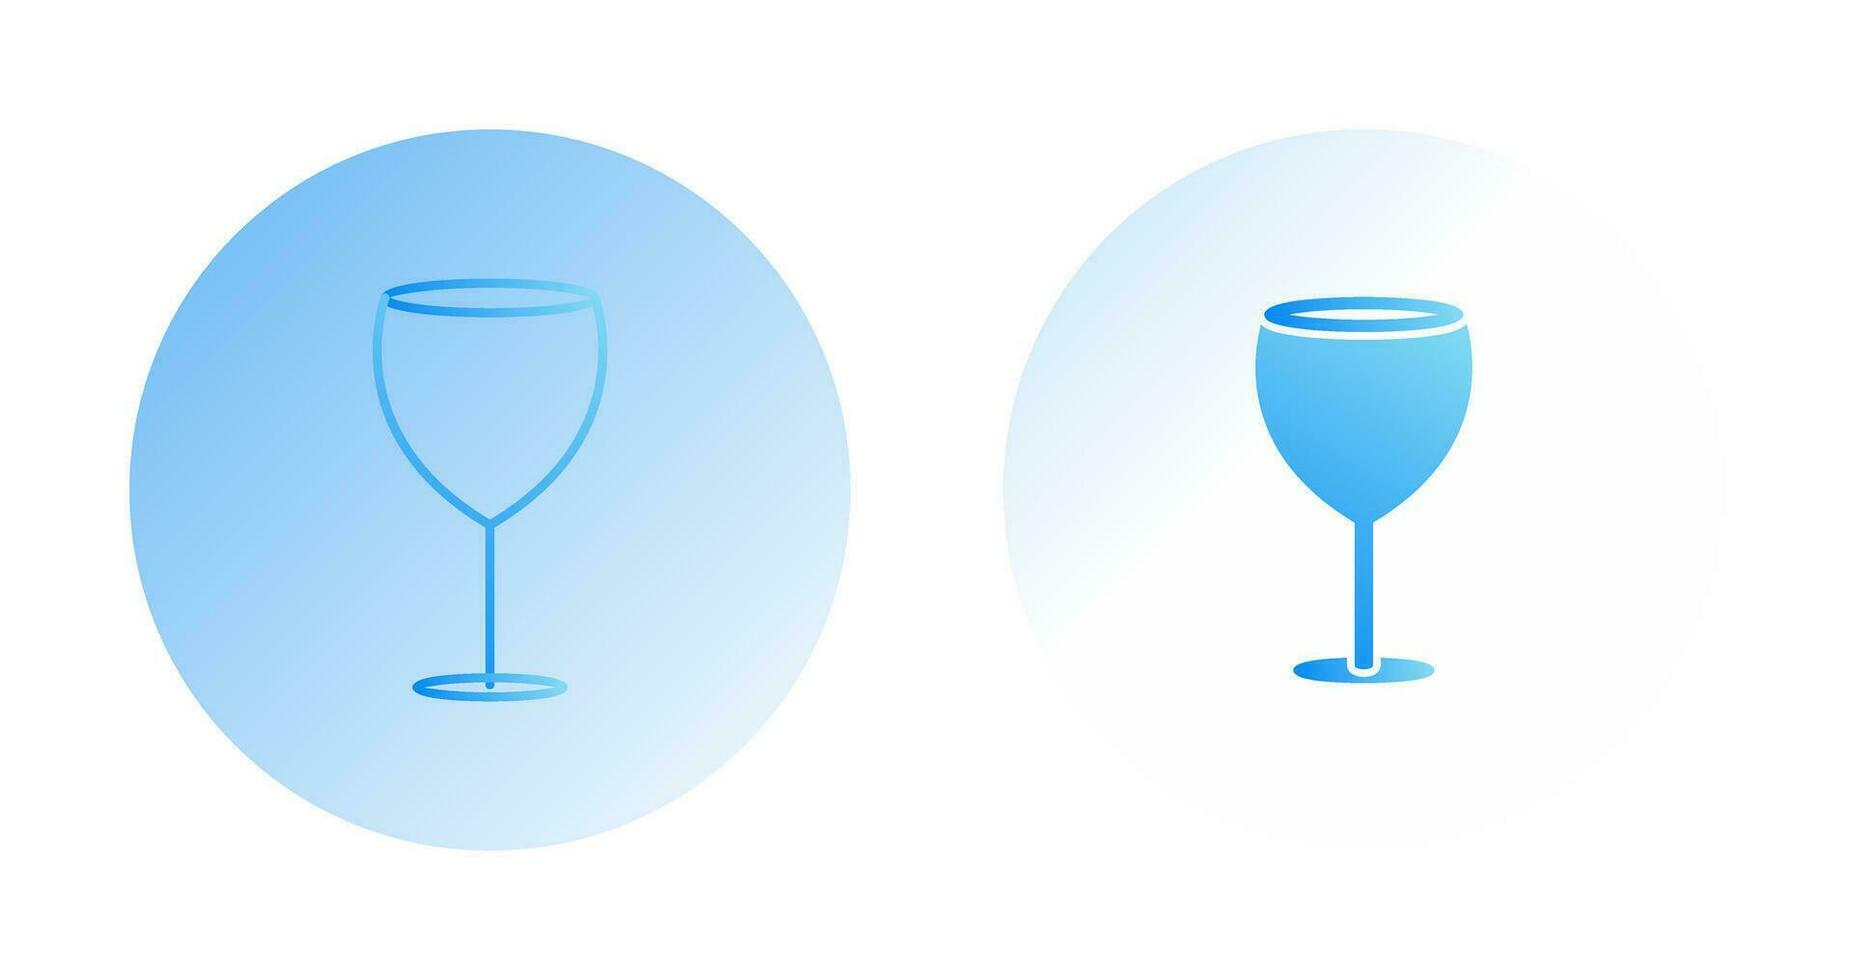 icono de vector de alcohol